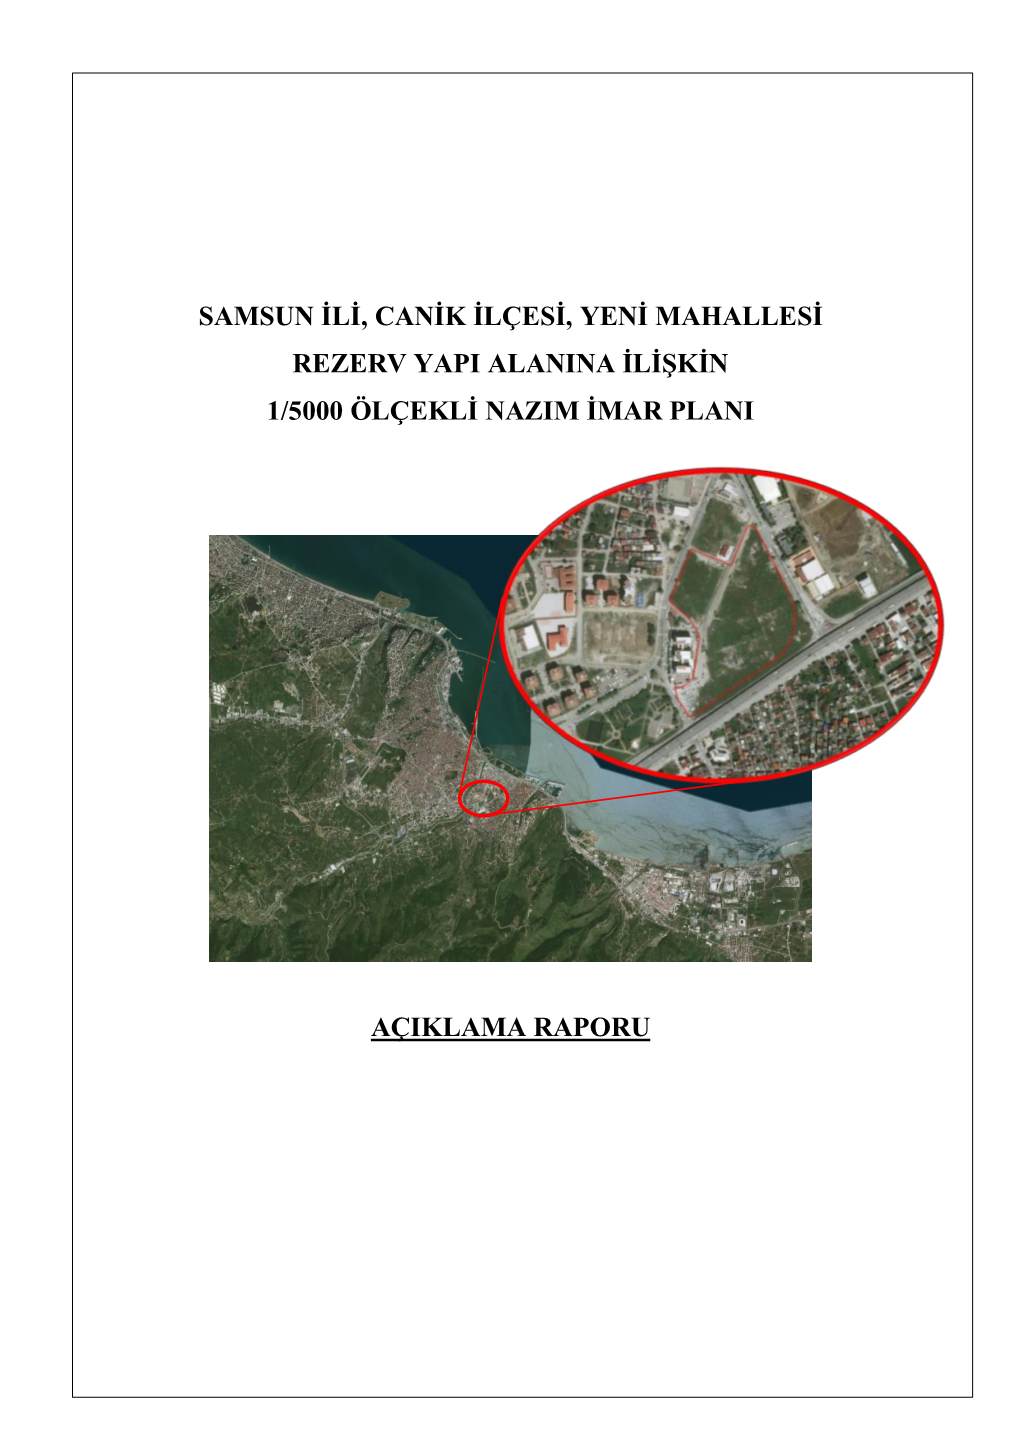 Samsun Ili, Canik Ilçesi, Yeni Mahallesi Rezerv Yapi Alanina Ilişkin 1/5000 Ölçekli Nazim Imar Plani